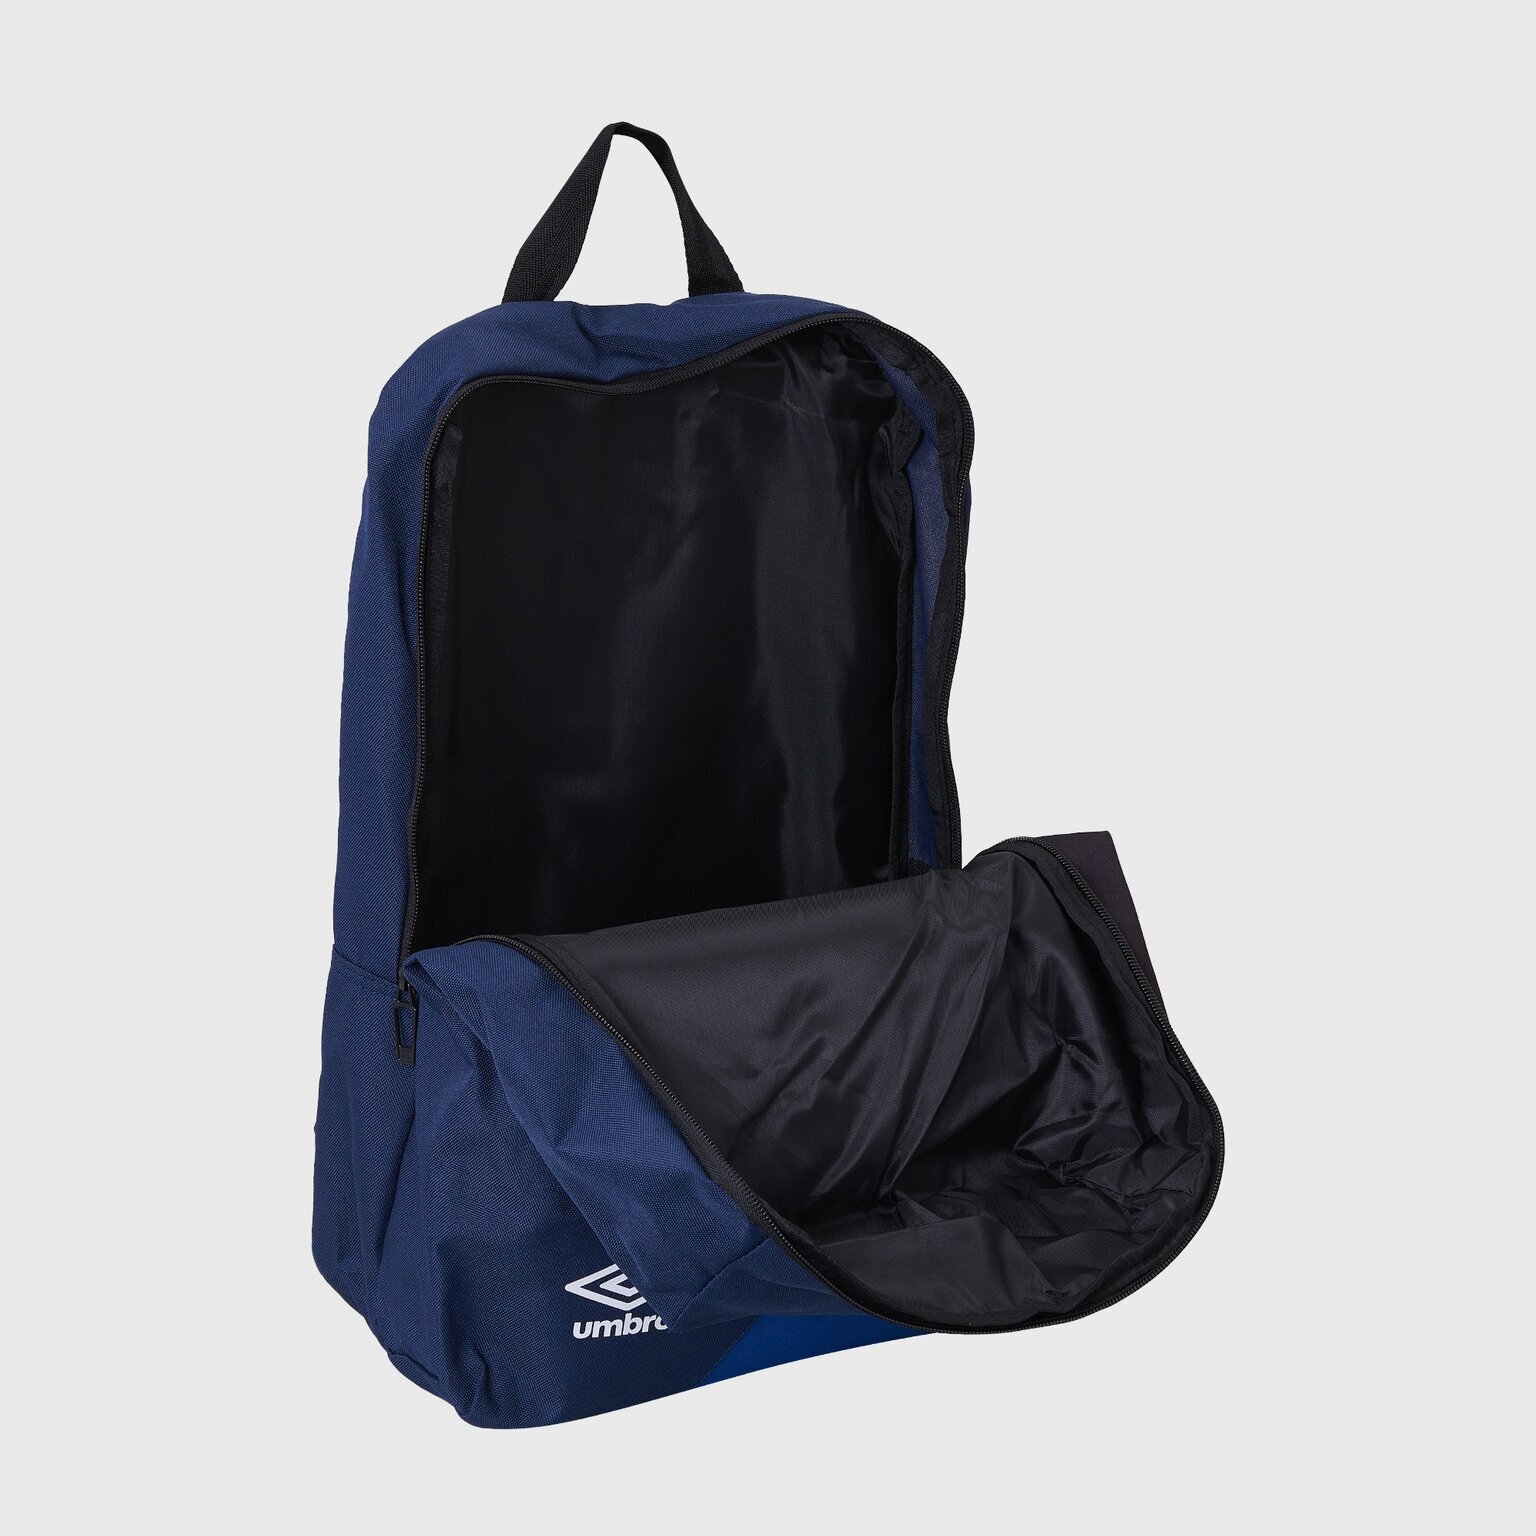 Спортивный рюкзак Umbro Team Training Backpack с одним отделением / Большой рюкзак Umbro для тренировки передним карманом на молнии / сине-черный, 23л, 43 х 31 х 17 см